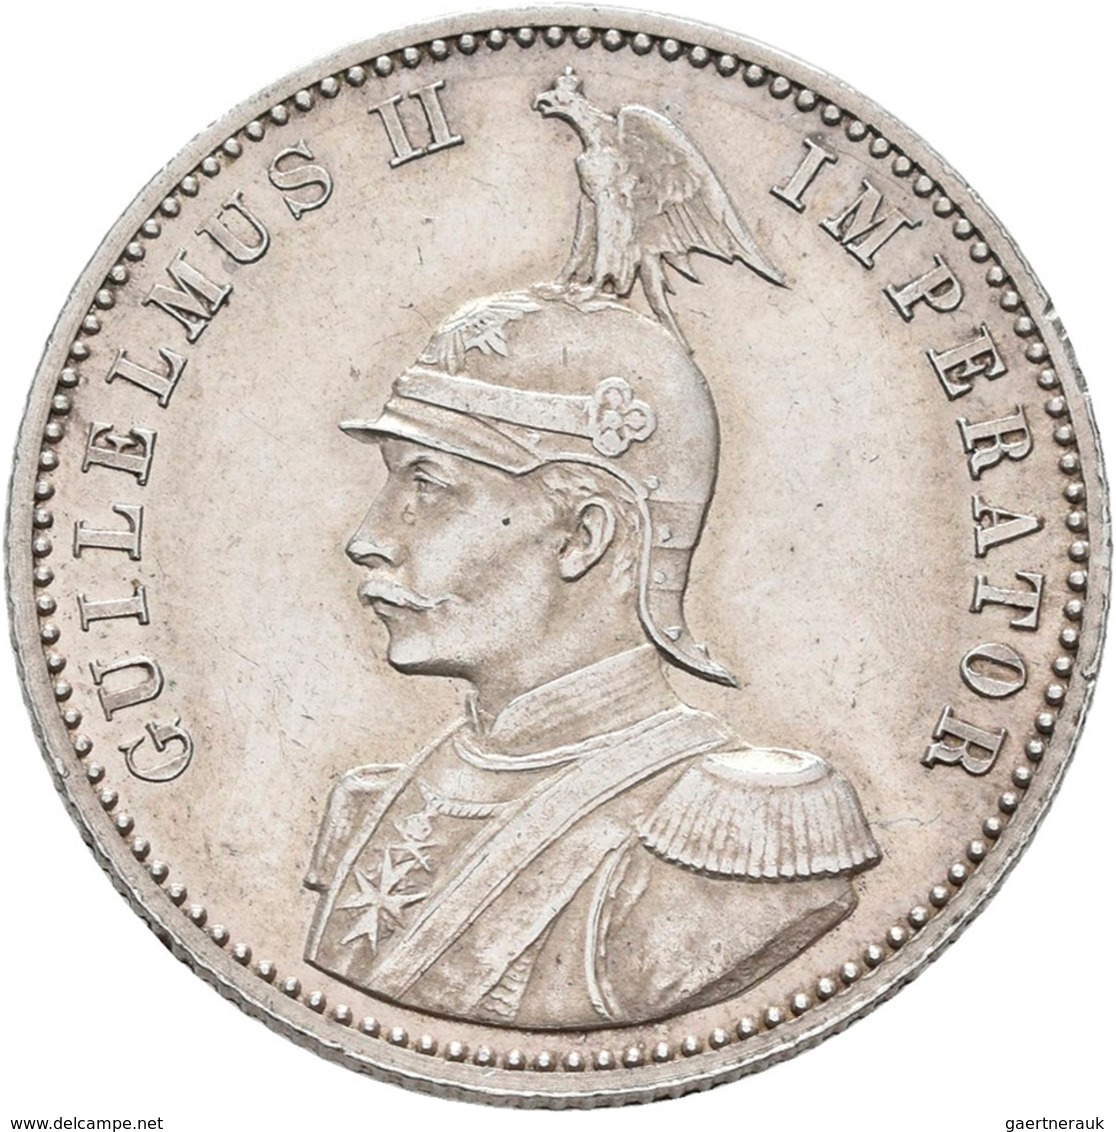 Deutsch-Ostafrika: DOA Und Danzig: 7 Münzen Aus Deutsch-Ostafrika Mit 1 Rupie 1905 J, ½ Rupie 1901 S - África Oriental Alemana